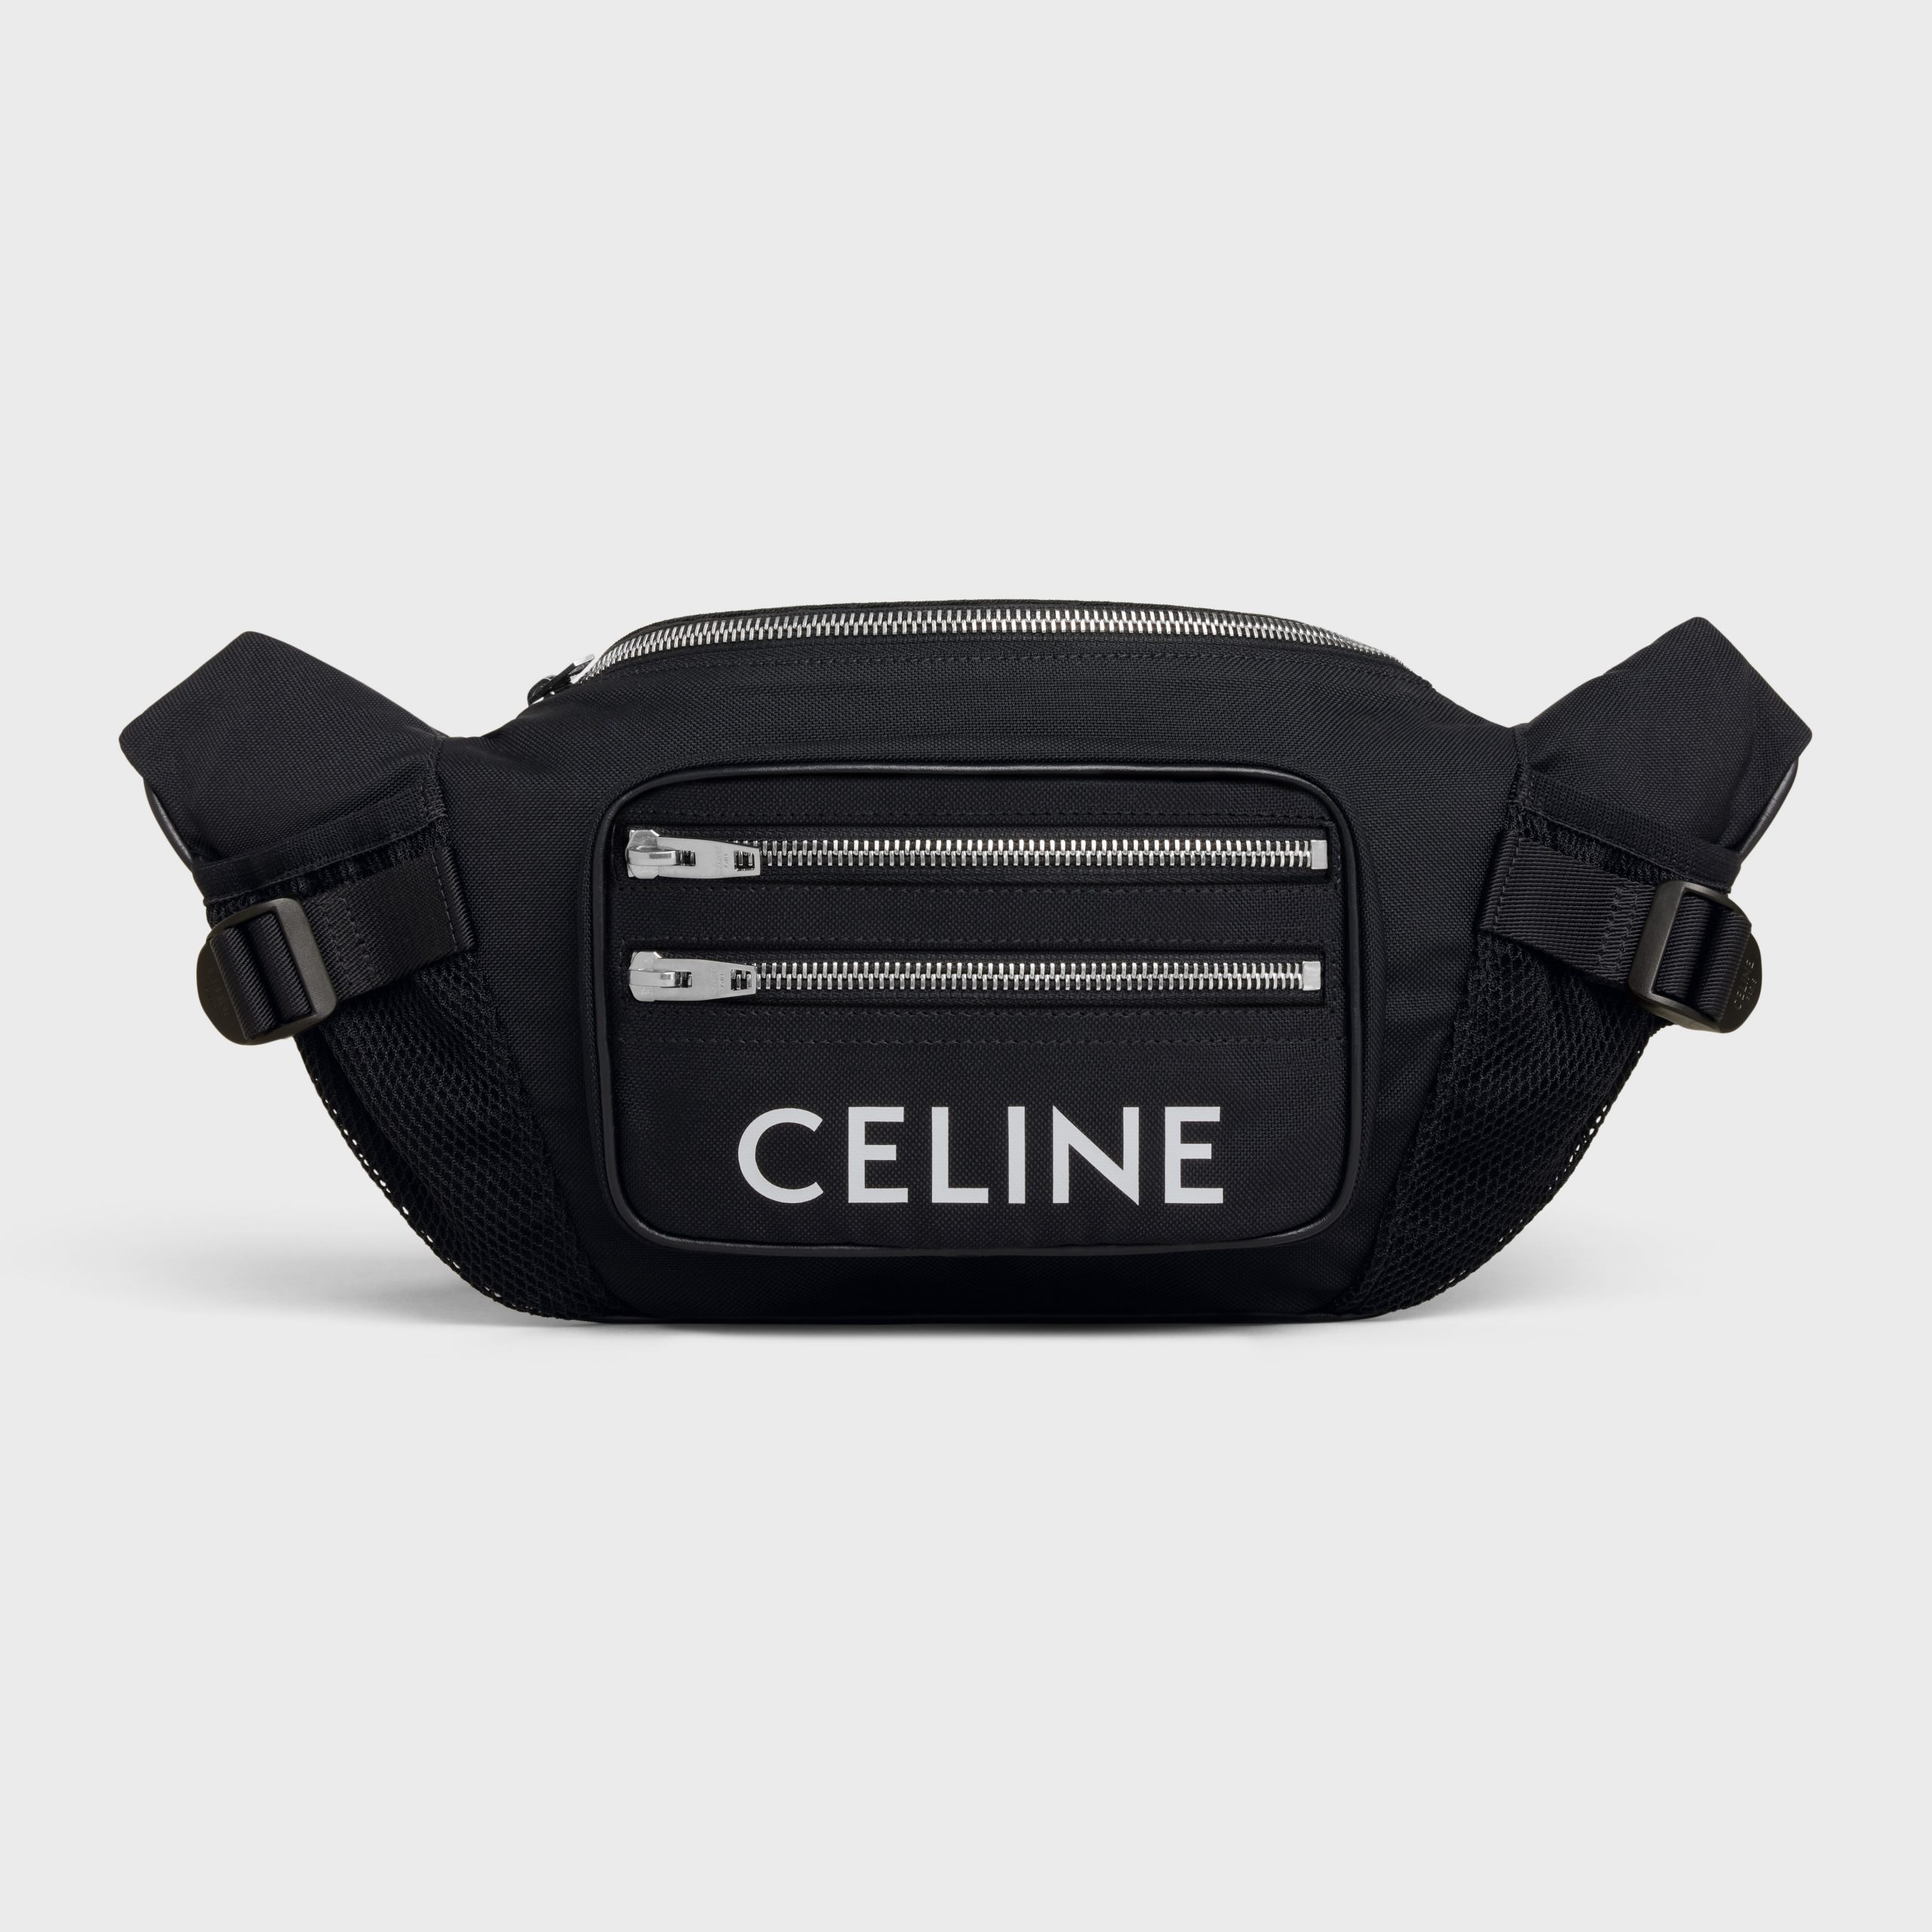 Celine LARGE ZIPPED BELT BAG TREKKING In Nylon With Celine Print – Black – 198682DMT.38SI